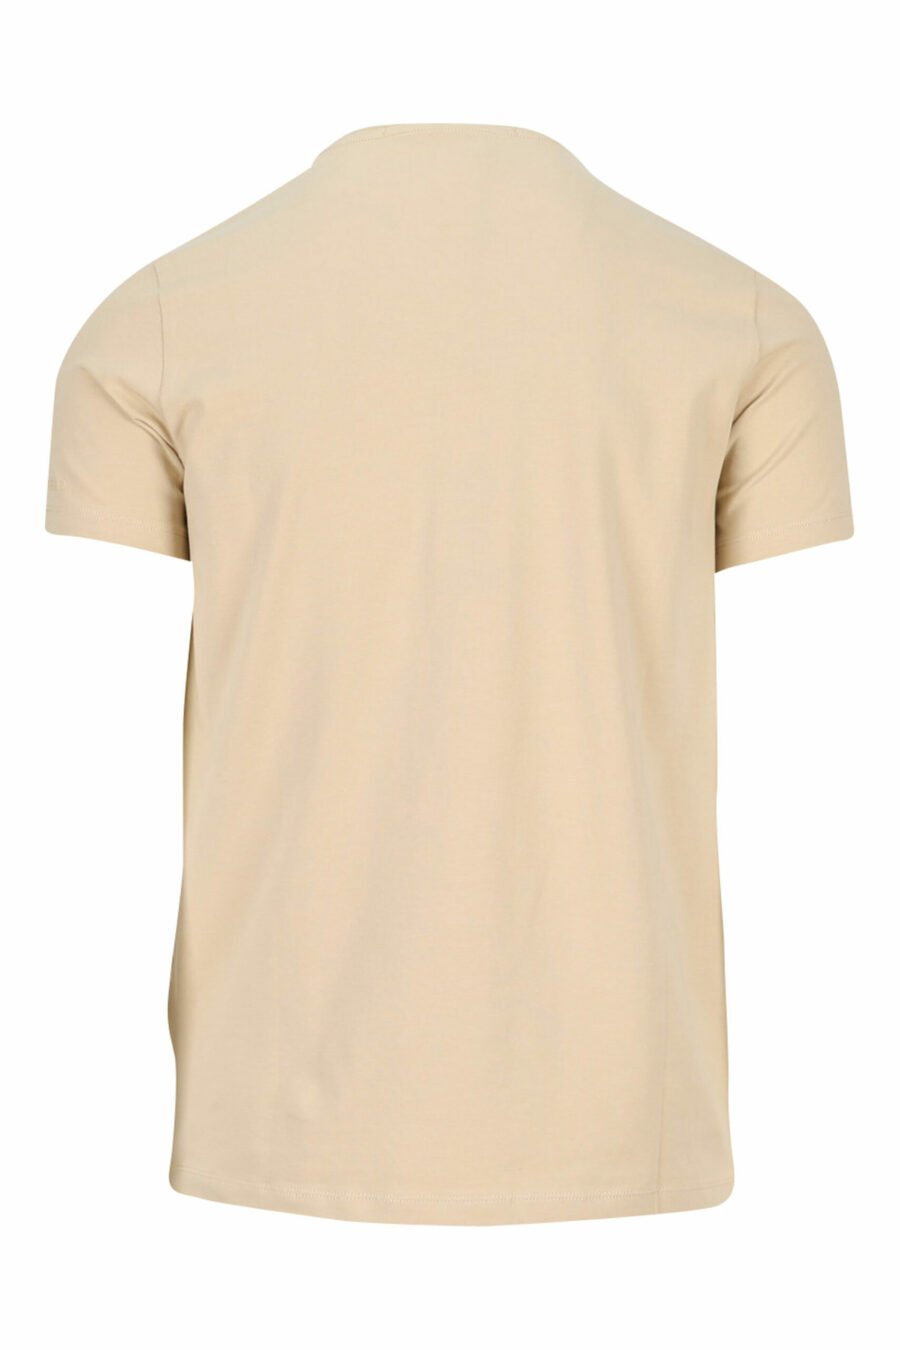 Camiseta beige con maxilogo monocromático de goma - 4062226401340 1 scaled